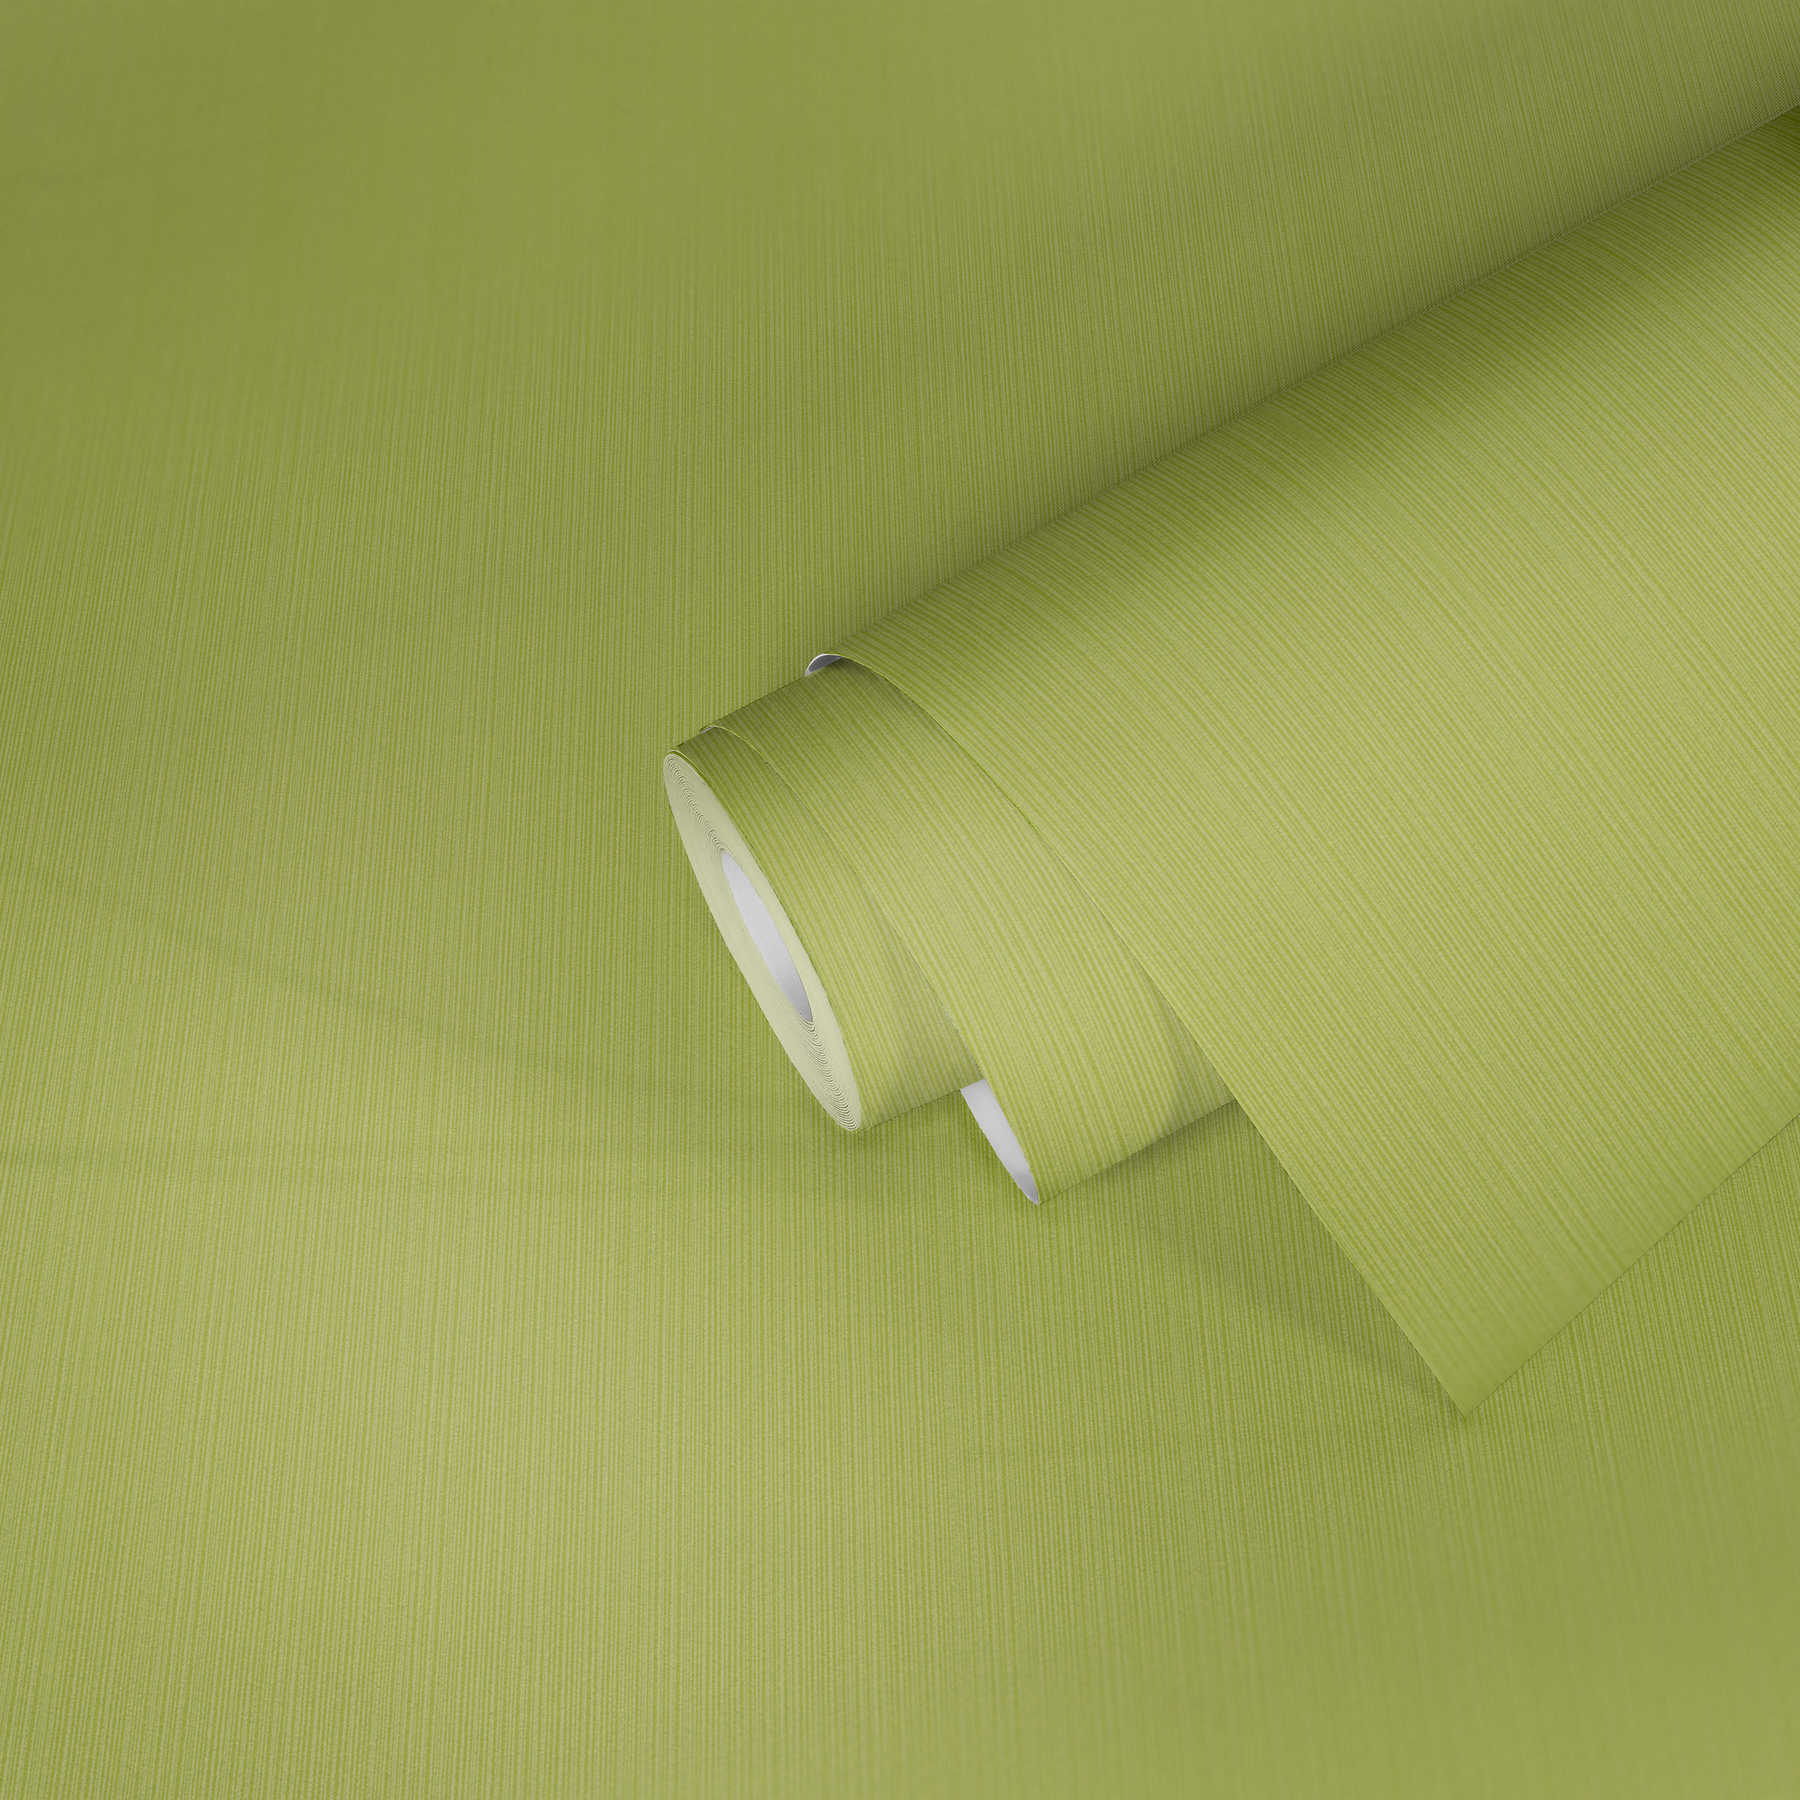             Carta da parati verde lime uni, con effetto texture a righe
        